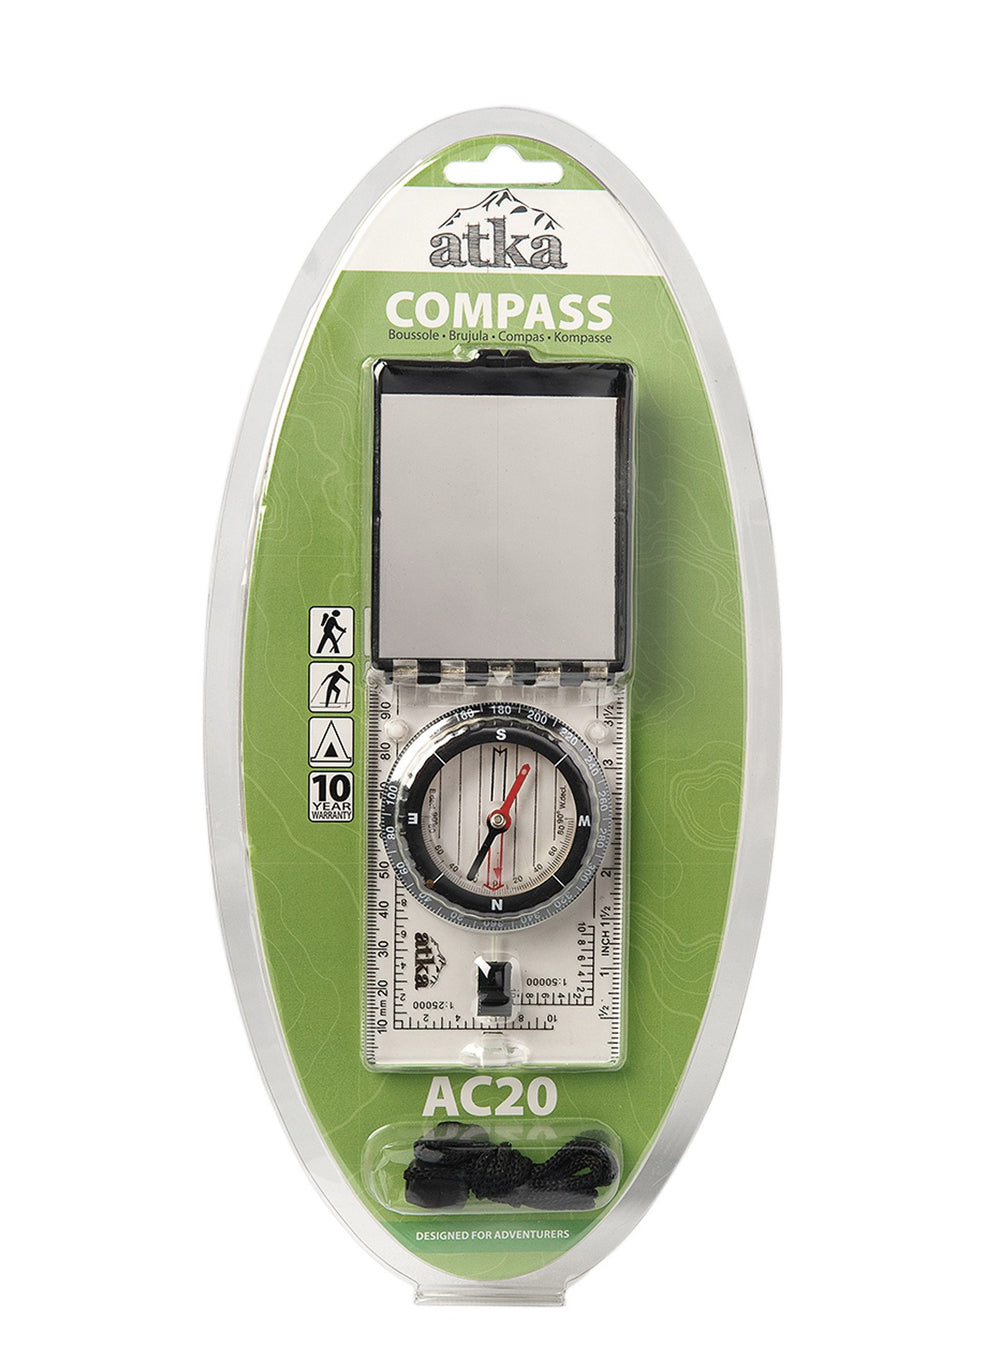 Atka AC20 Compass - TacSource